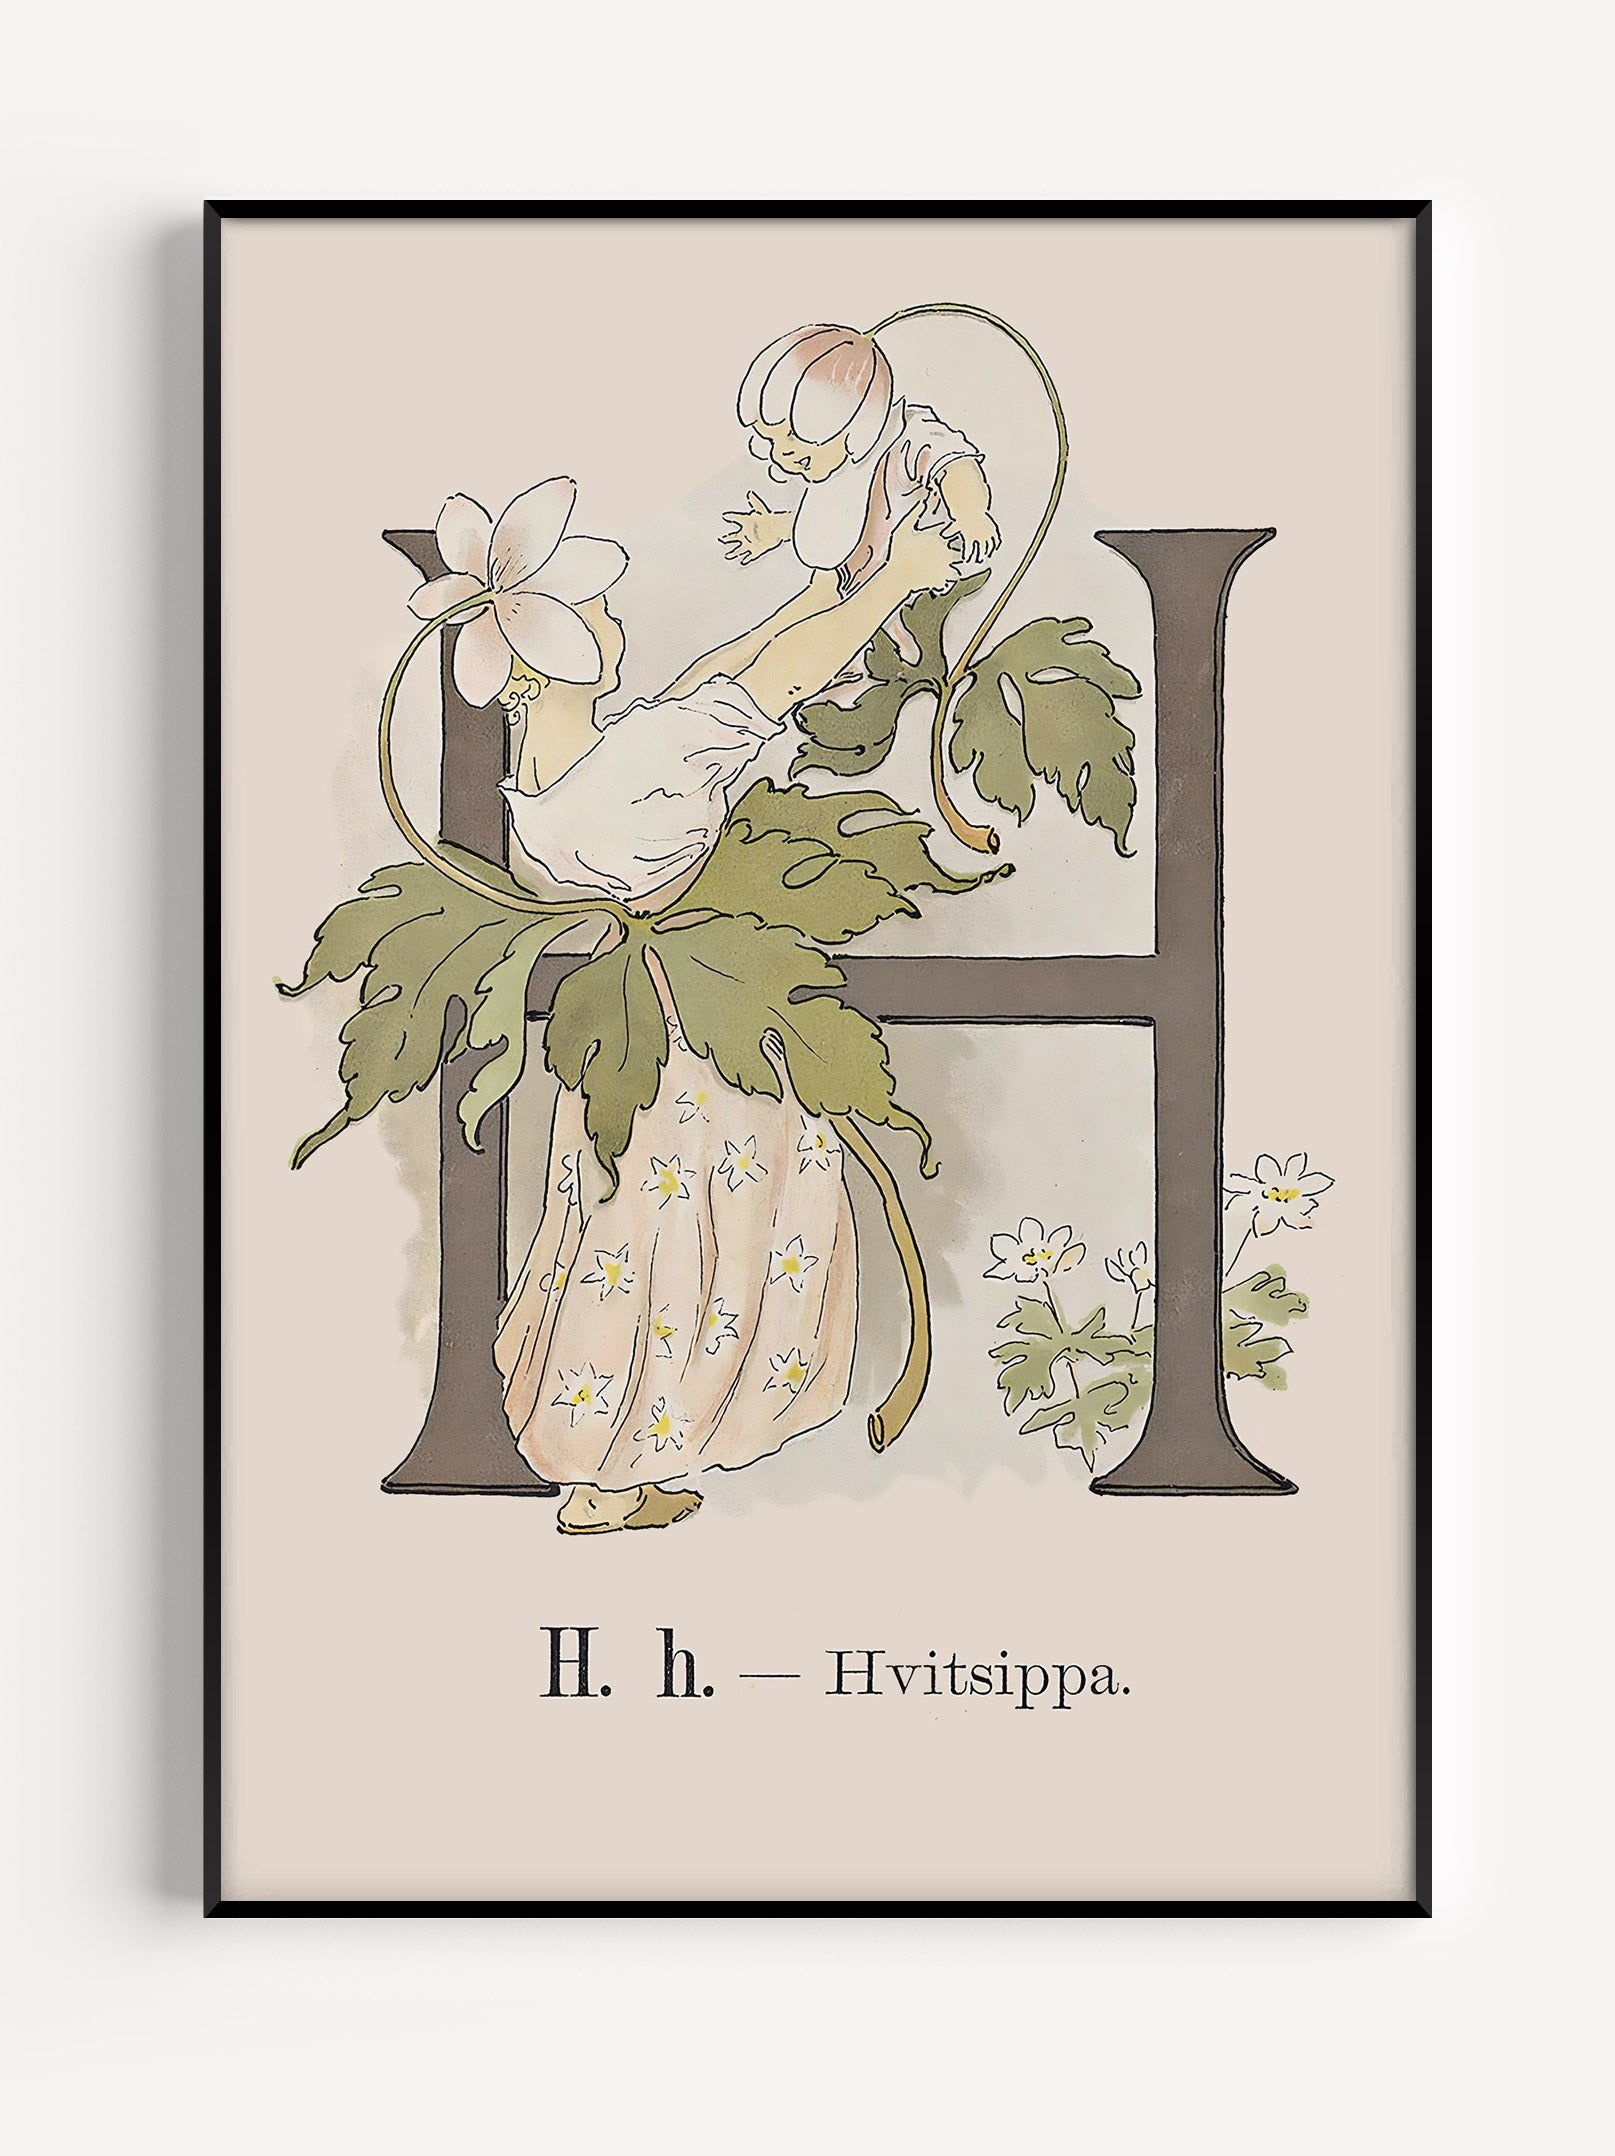 Prinsarnes Alfabet - H - Fine art prints - poster - av Ottilias originalillustrationer från 1800-talet.